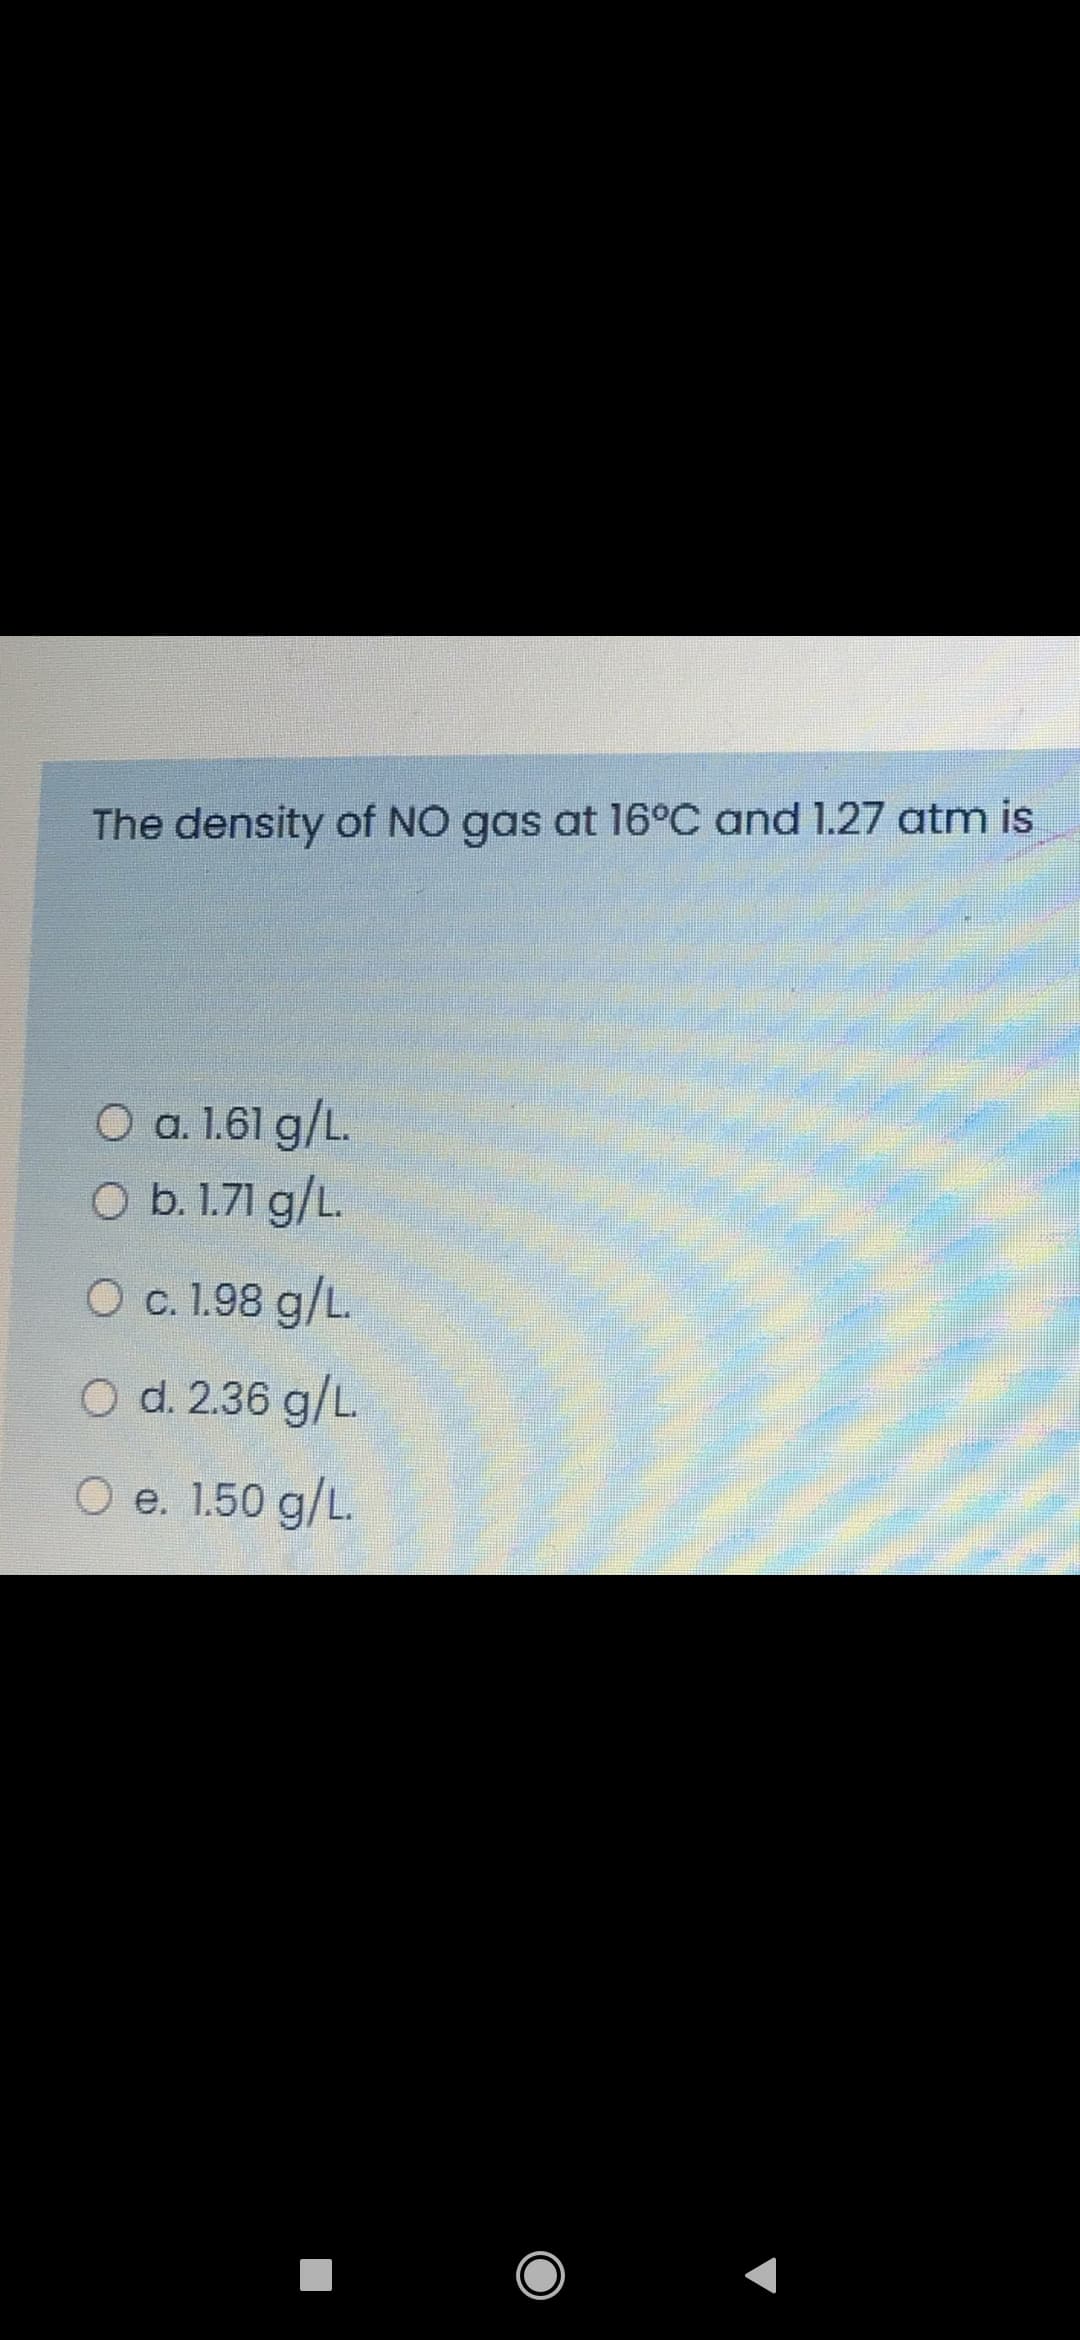 The density of NO gas at 16°C and 1.27 atm is
O a. 1.61 g/L.
O b. 1.71 g/L.
O c. 1.98 g/L.
O d. 2.36 g/L.
O e. 1.50 g/L.
